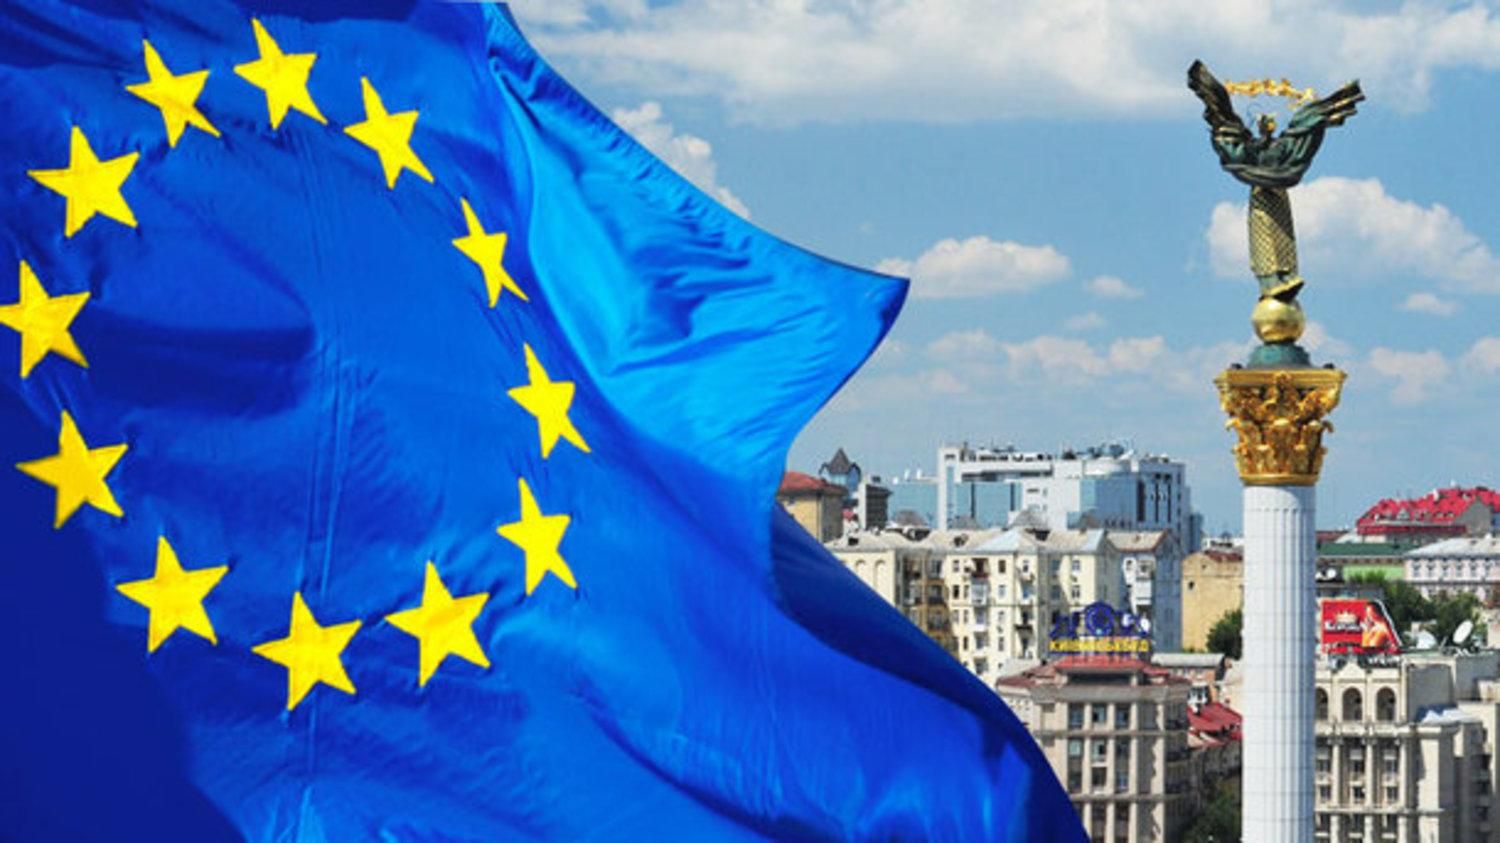 Украине с Европой по пути? - 28 января 2020 - 24 Канал